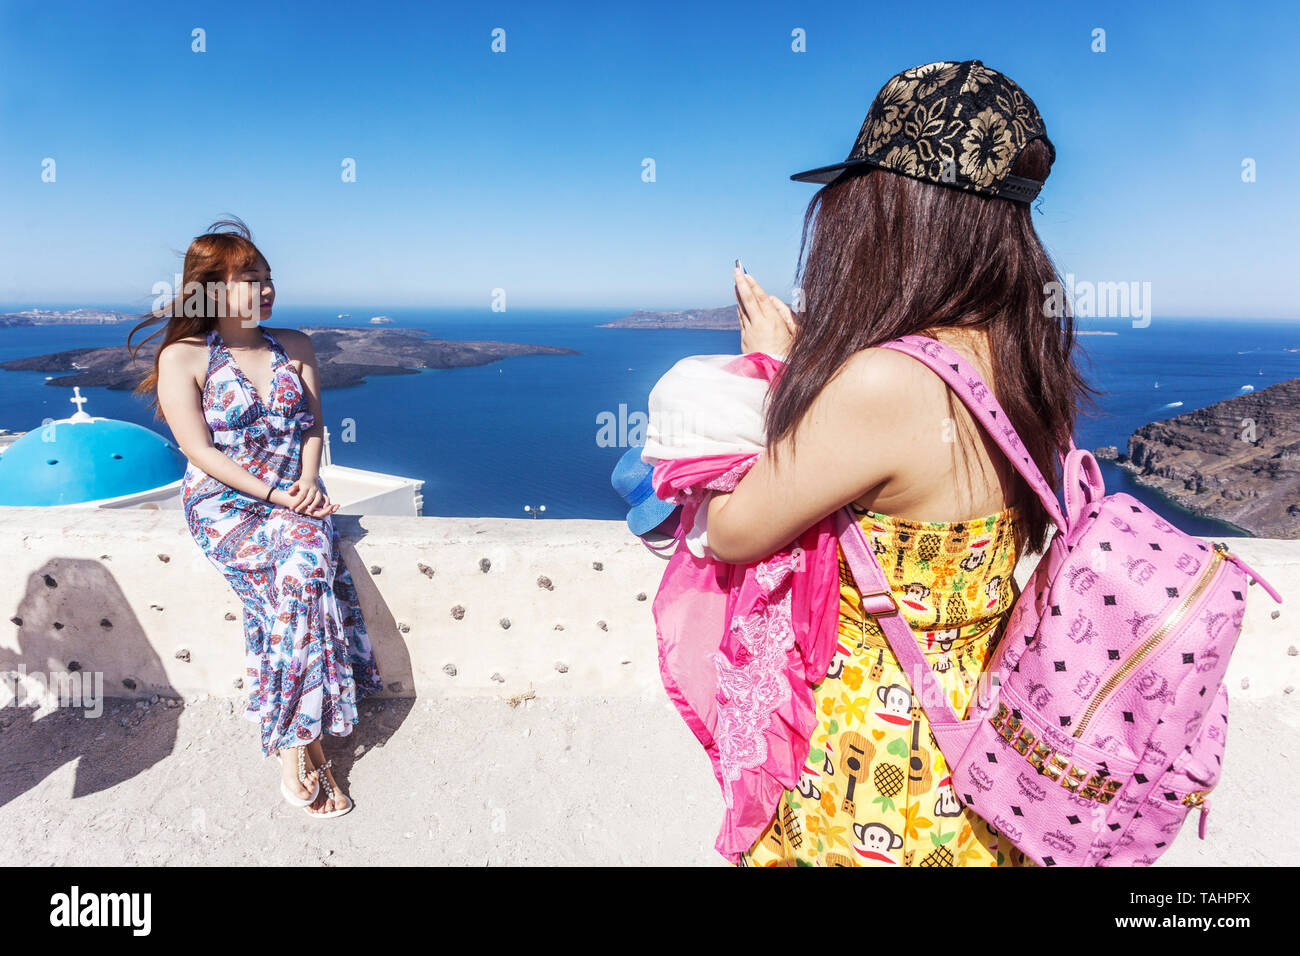 Zwei junge asiatische Touristen, die Fotos mit Telefon machen, Mode Rucksack Marke MCM, Santorini griechische Inseln Griechenland, Europa Reisende Menschen Stockfoto